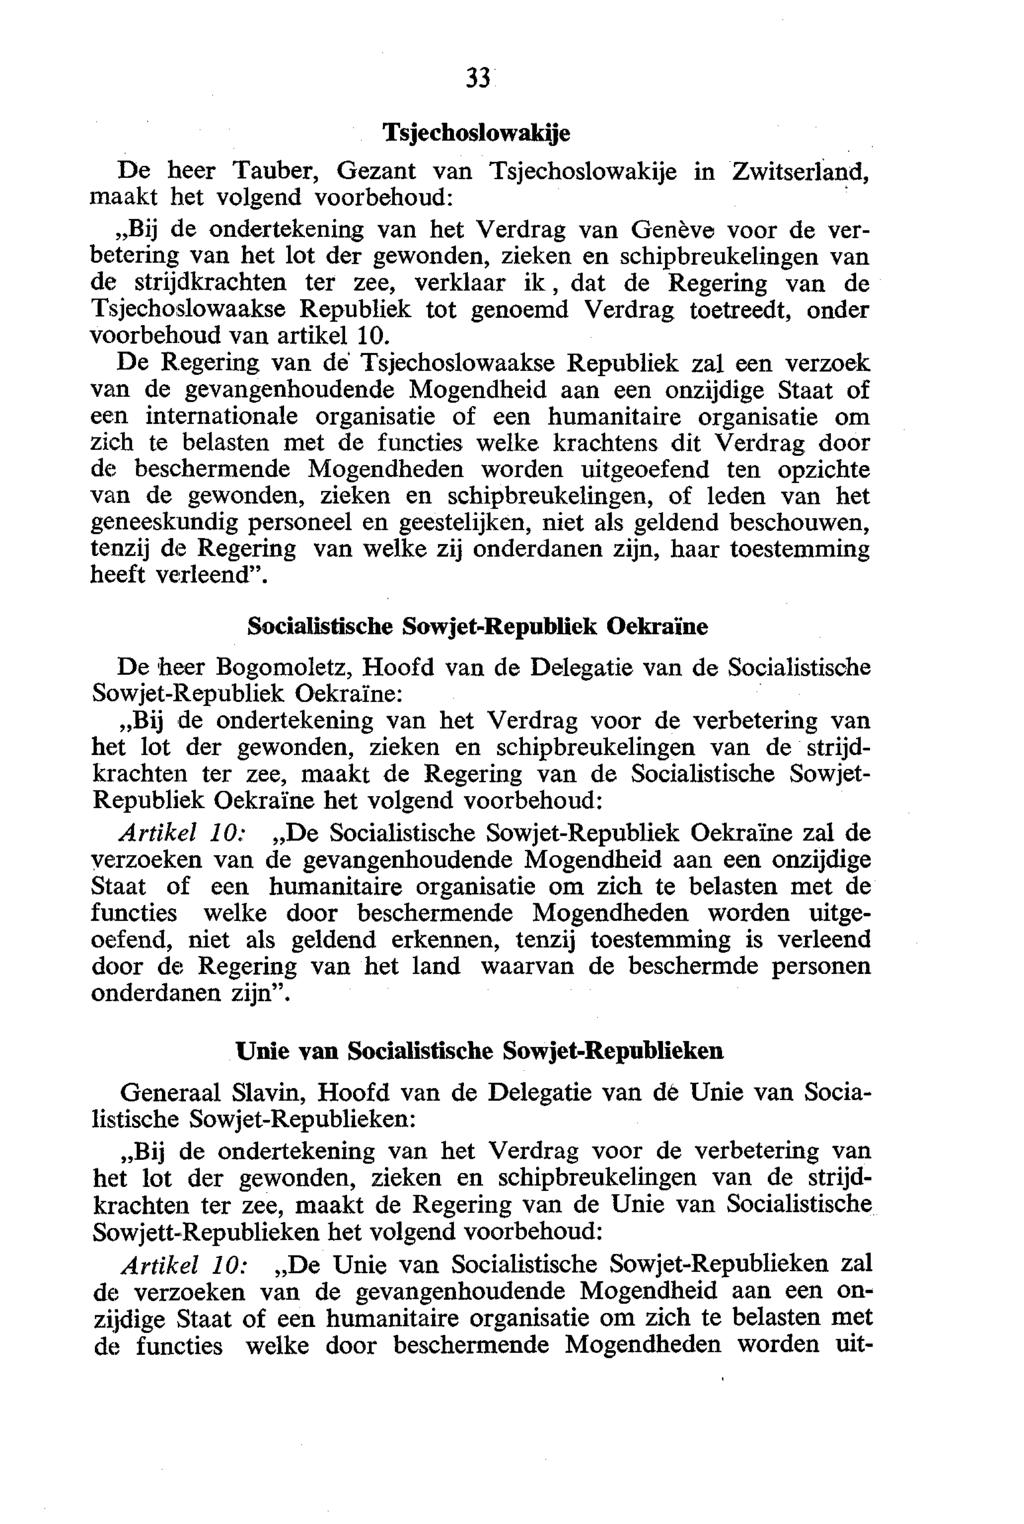 Tsjechoslowakije De heer Tauber, Gezant van Tsjechoslowakije in Zwitserland, maakt het volgend voorbehoud: Bij de ondertekening van het Verdrag van Genève voor de verbetering van het lot der